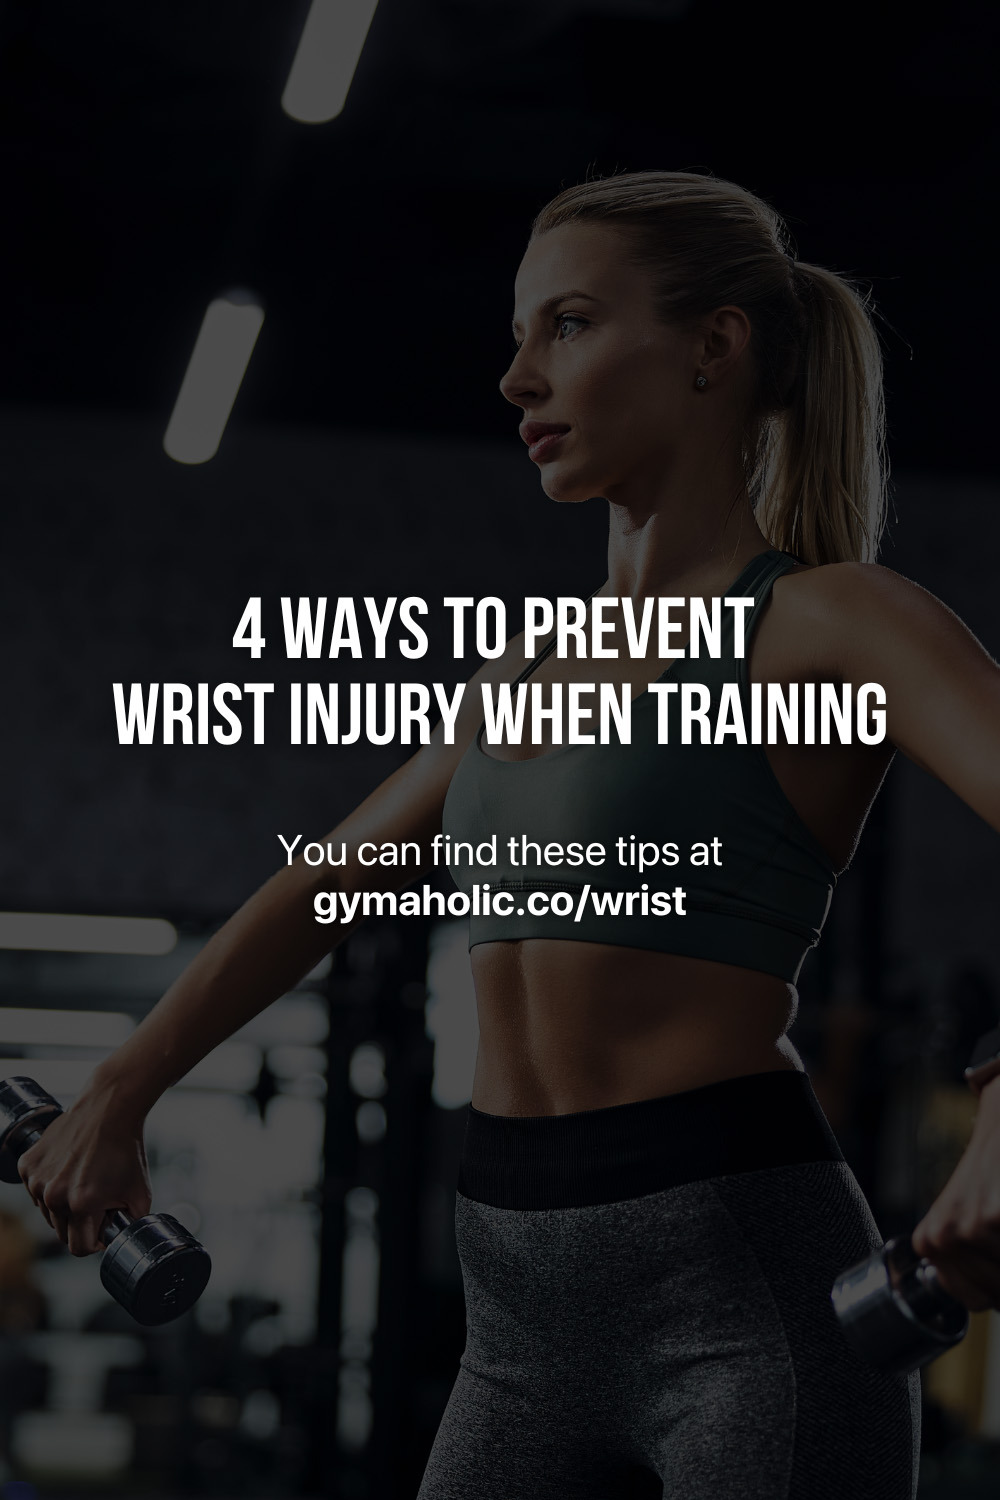 4 Ways to Prevent Wrist Injury when Training